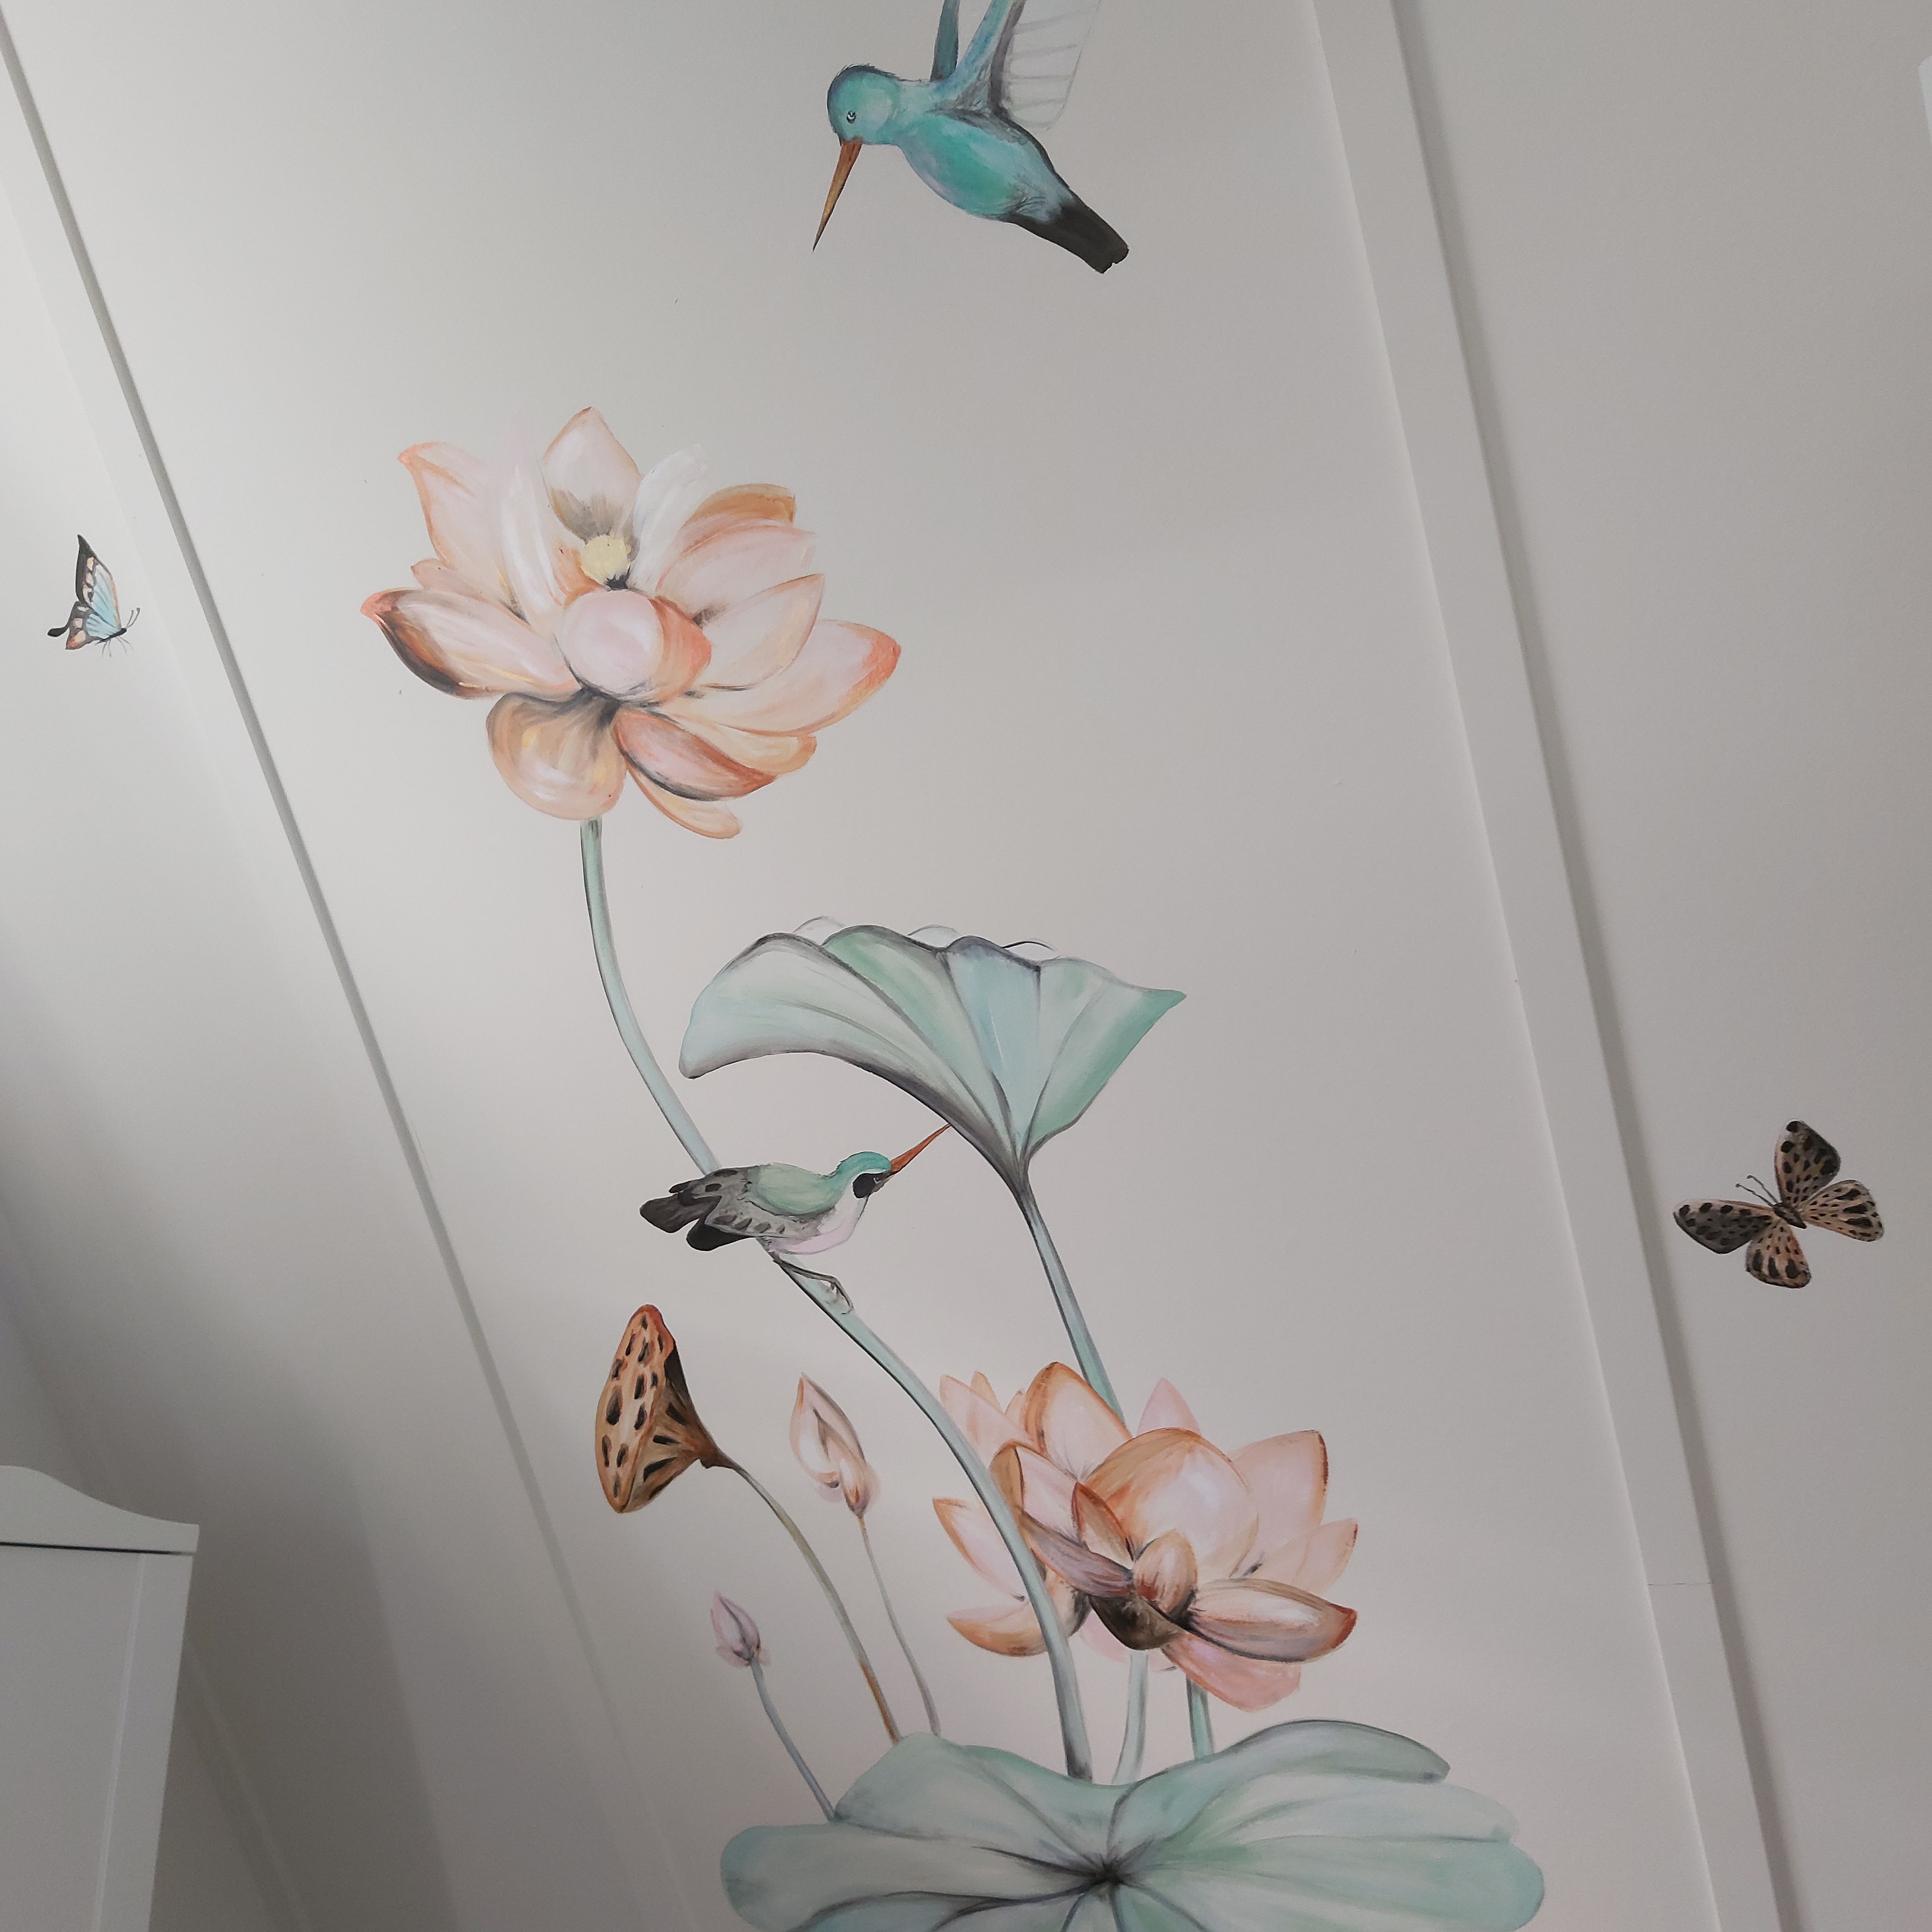 Muurschildering bloem met kolibri 1 van 2 schilderingen